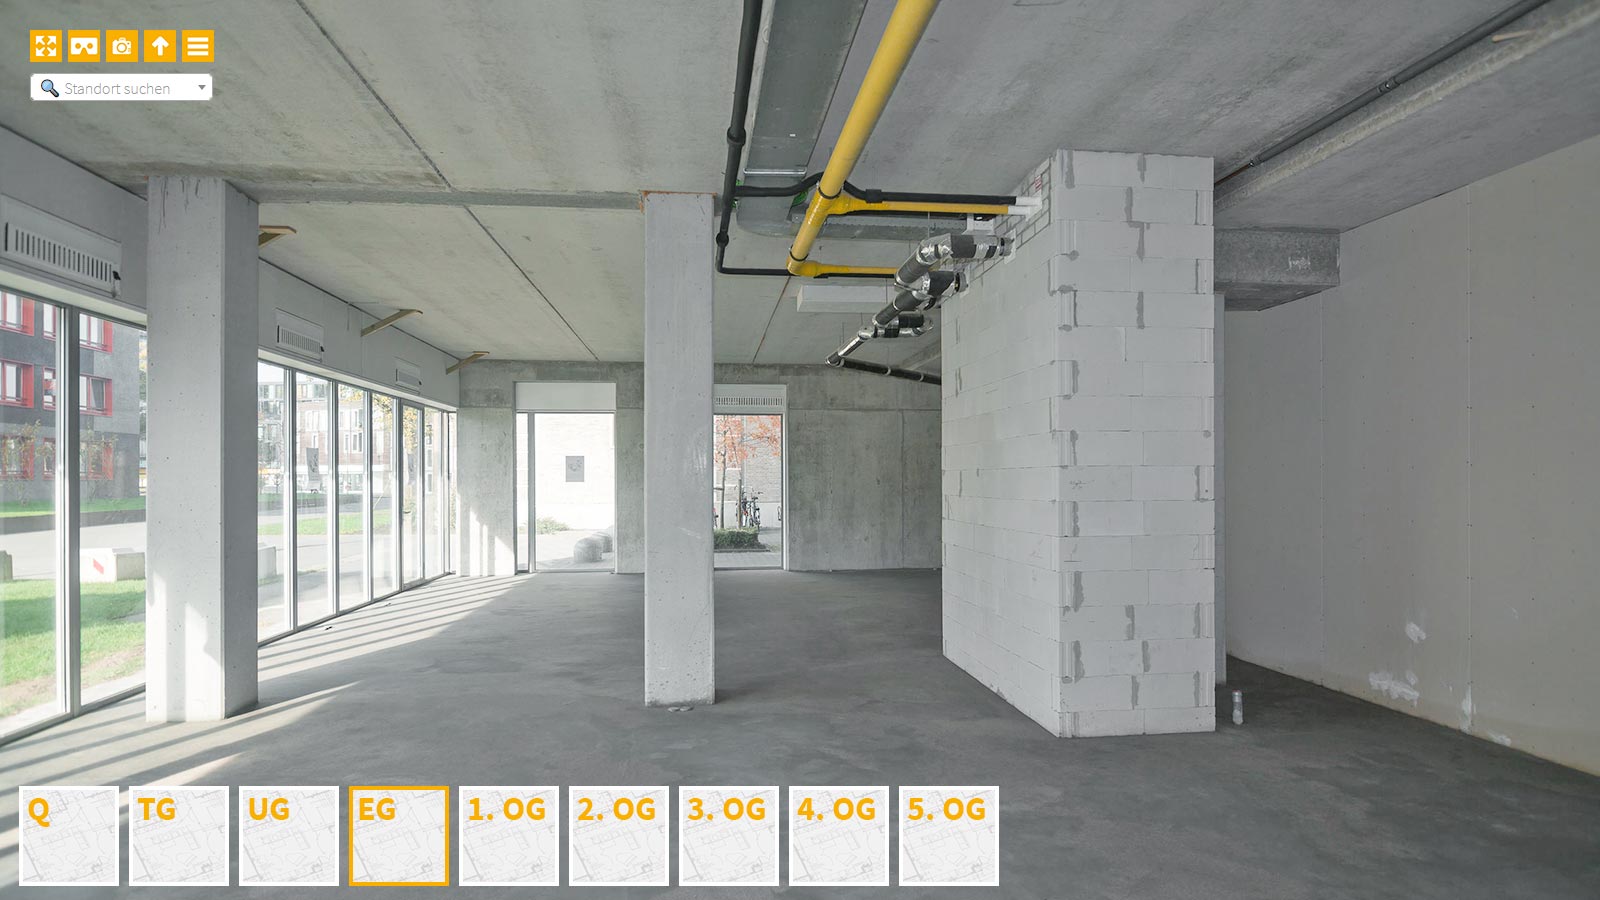 Baudokumentation 360 Grad bei gestörten Projekten in 


	


	


	


	


	


	


	


	


	


	Düsseldorf









, Bilddokumentation als virtueller Rundgang